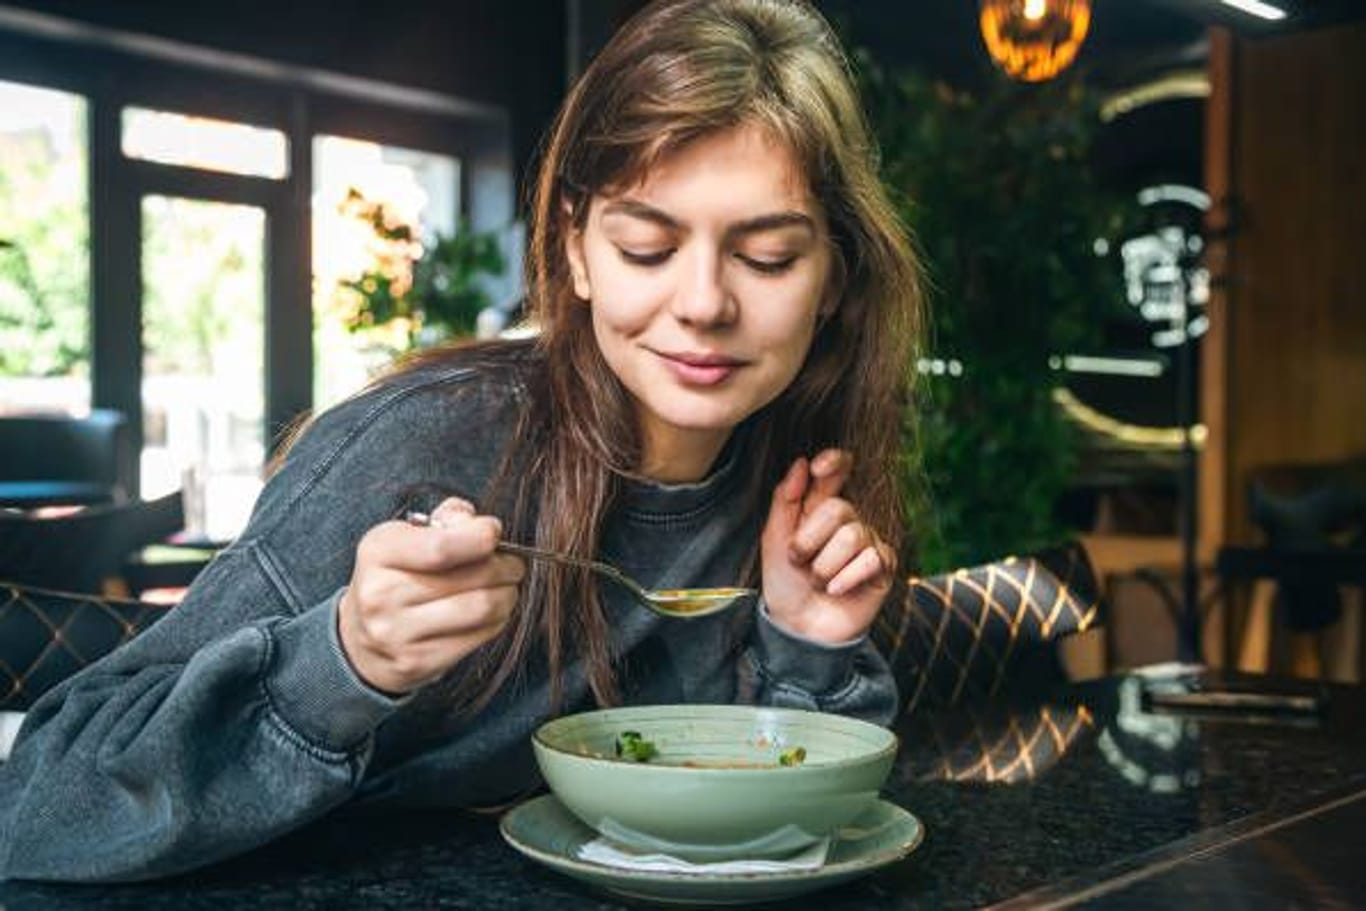 Experten fordern mehr Aufklärung: Bestimmte Beschwerden, die während des Essens auftreten, könnten auf eine ernsthafte Erkrankung hinweisen.